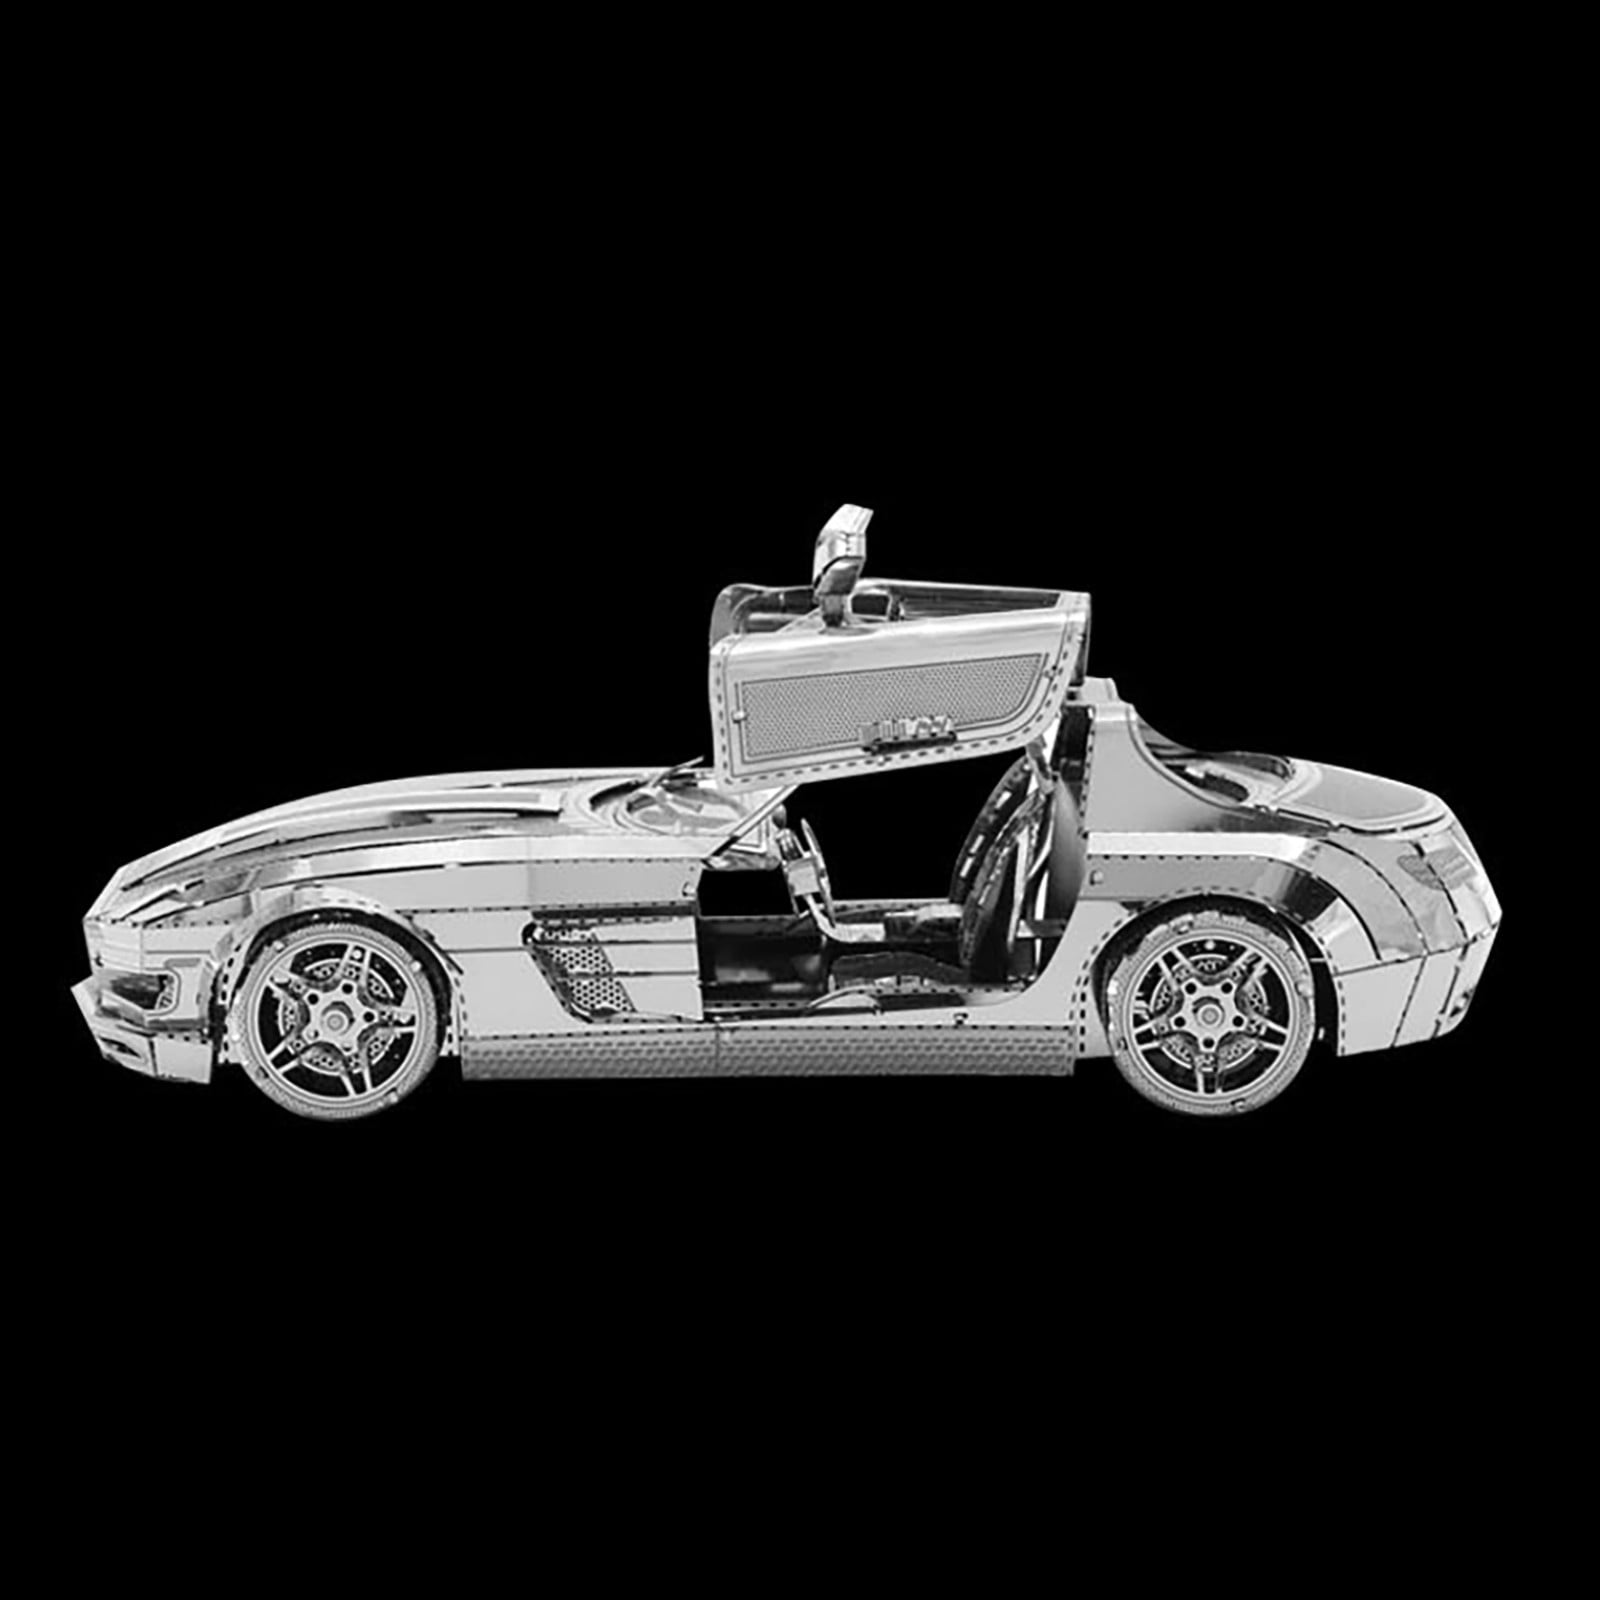 3D Metal Assembled Models DIY Puzzles  Sports Car Models Desktop Decoration 